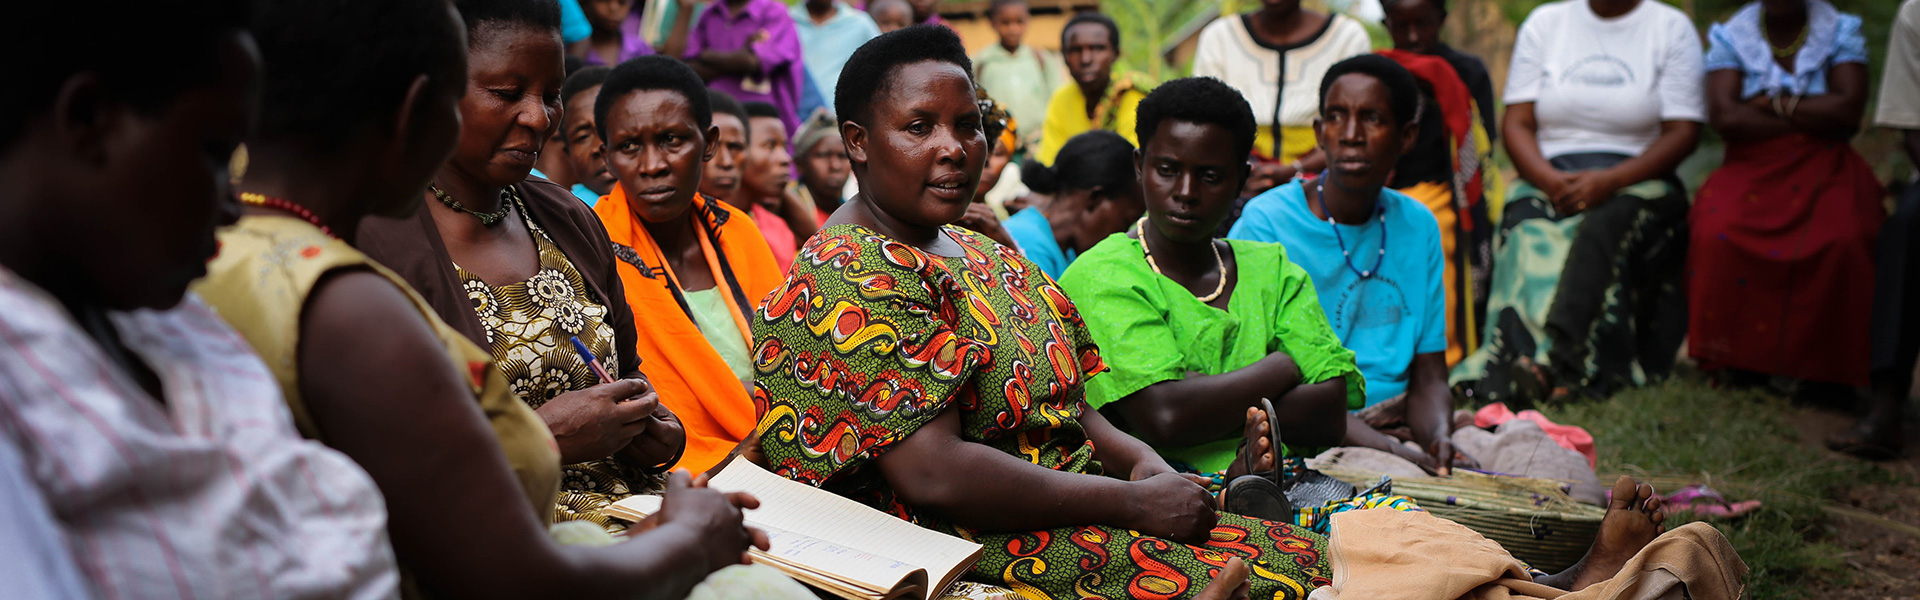 uganda-women-savings-group